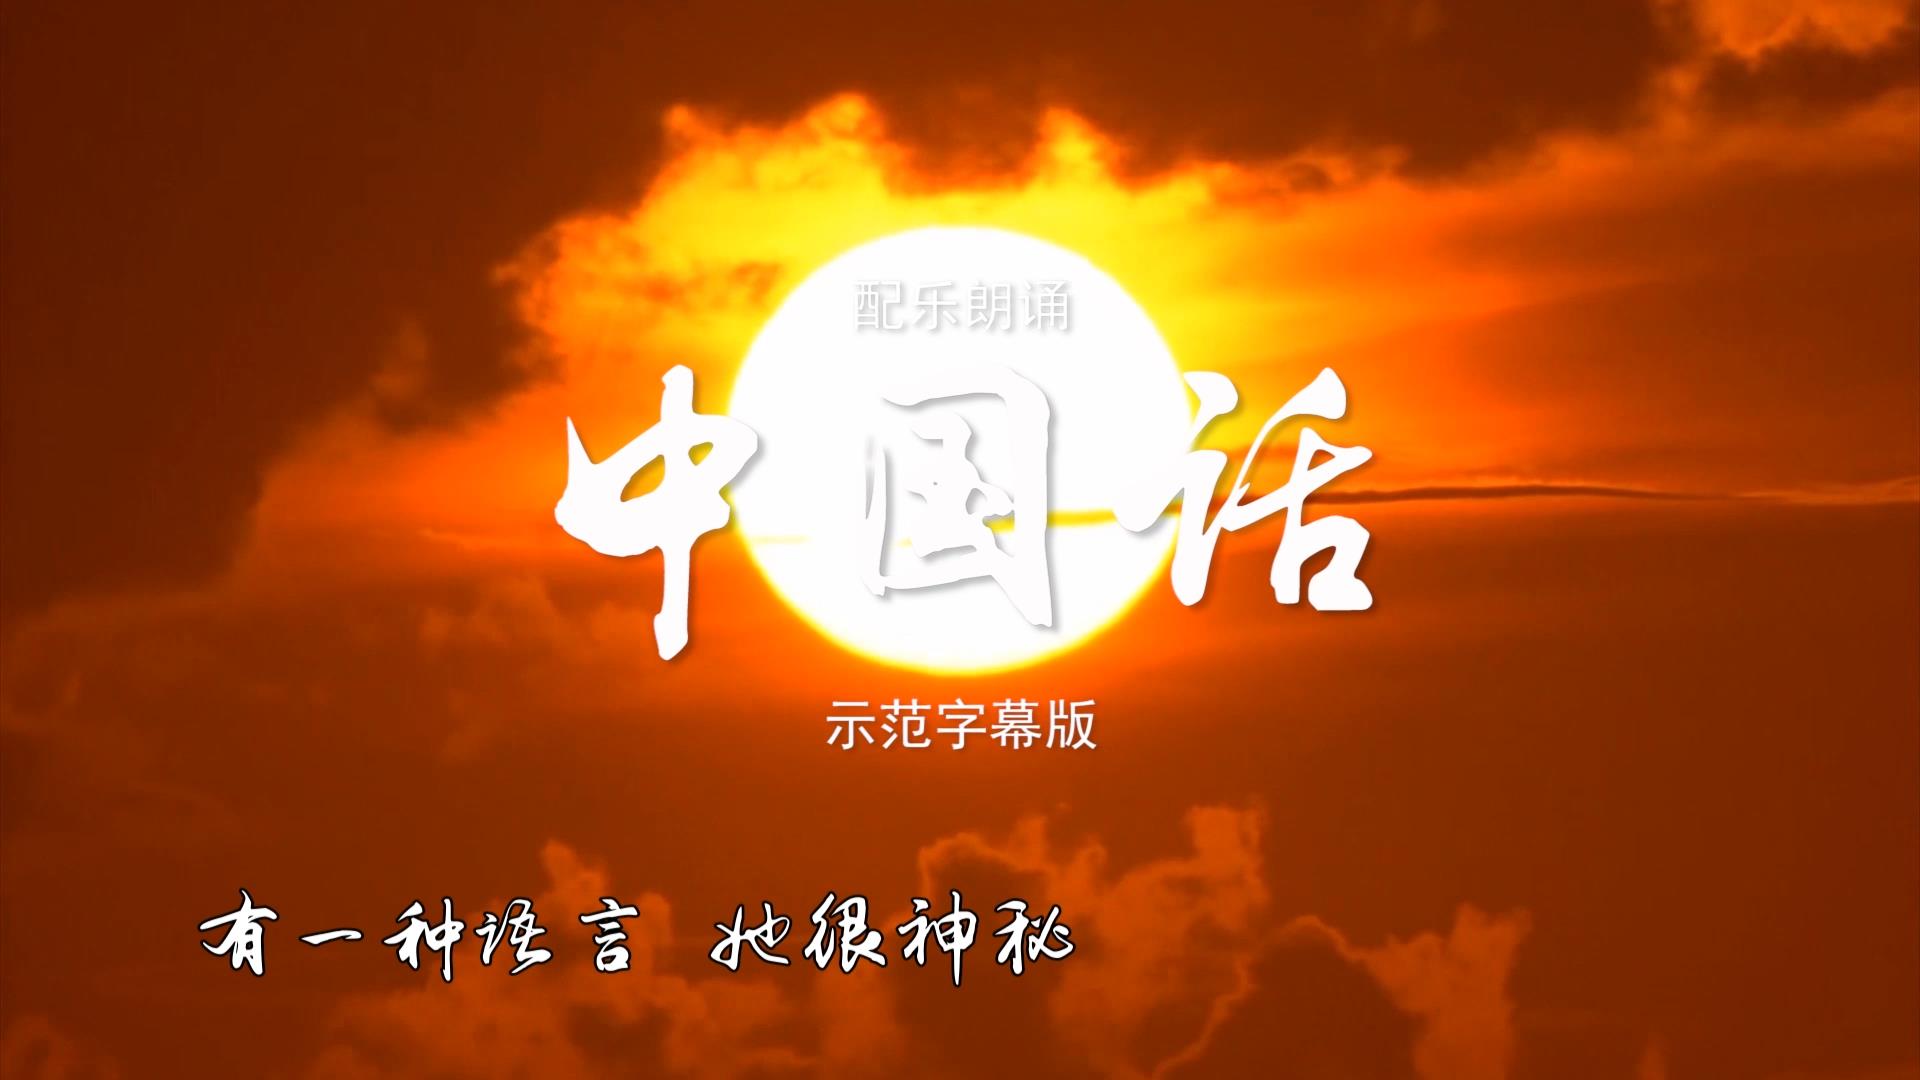 中国话单人版 诗歌朗诵配乐伴奏舞台演出LED背景